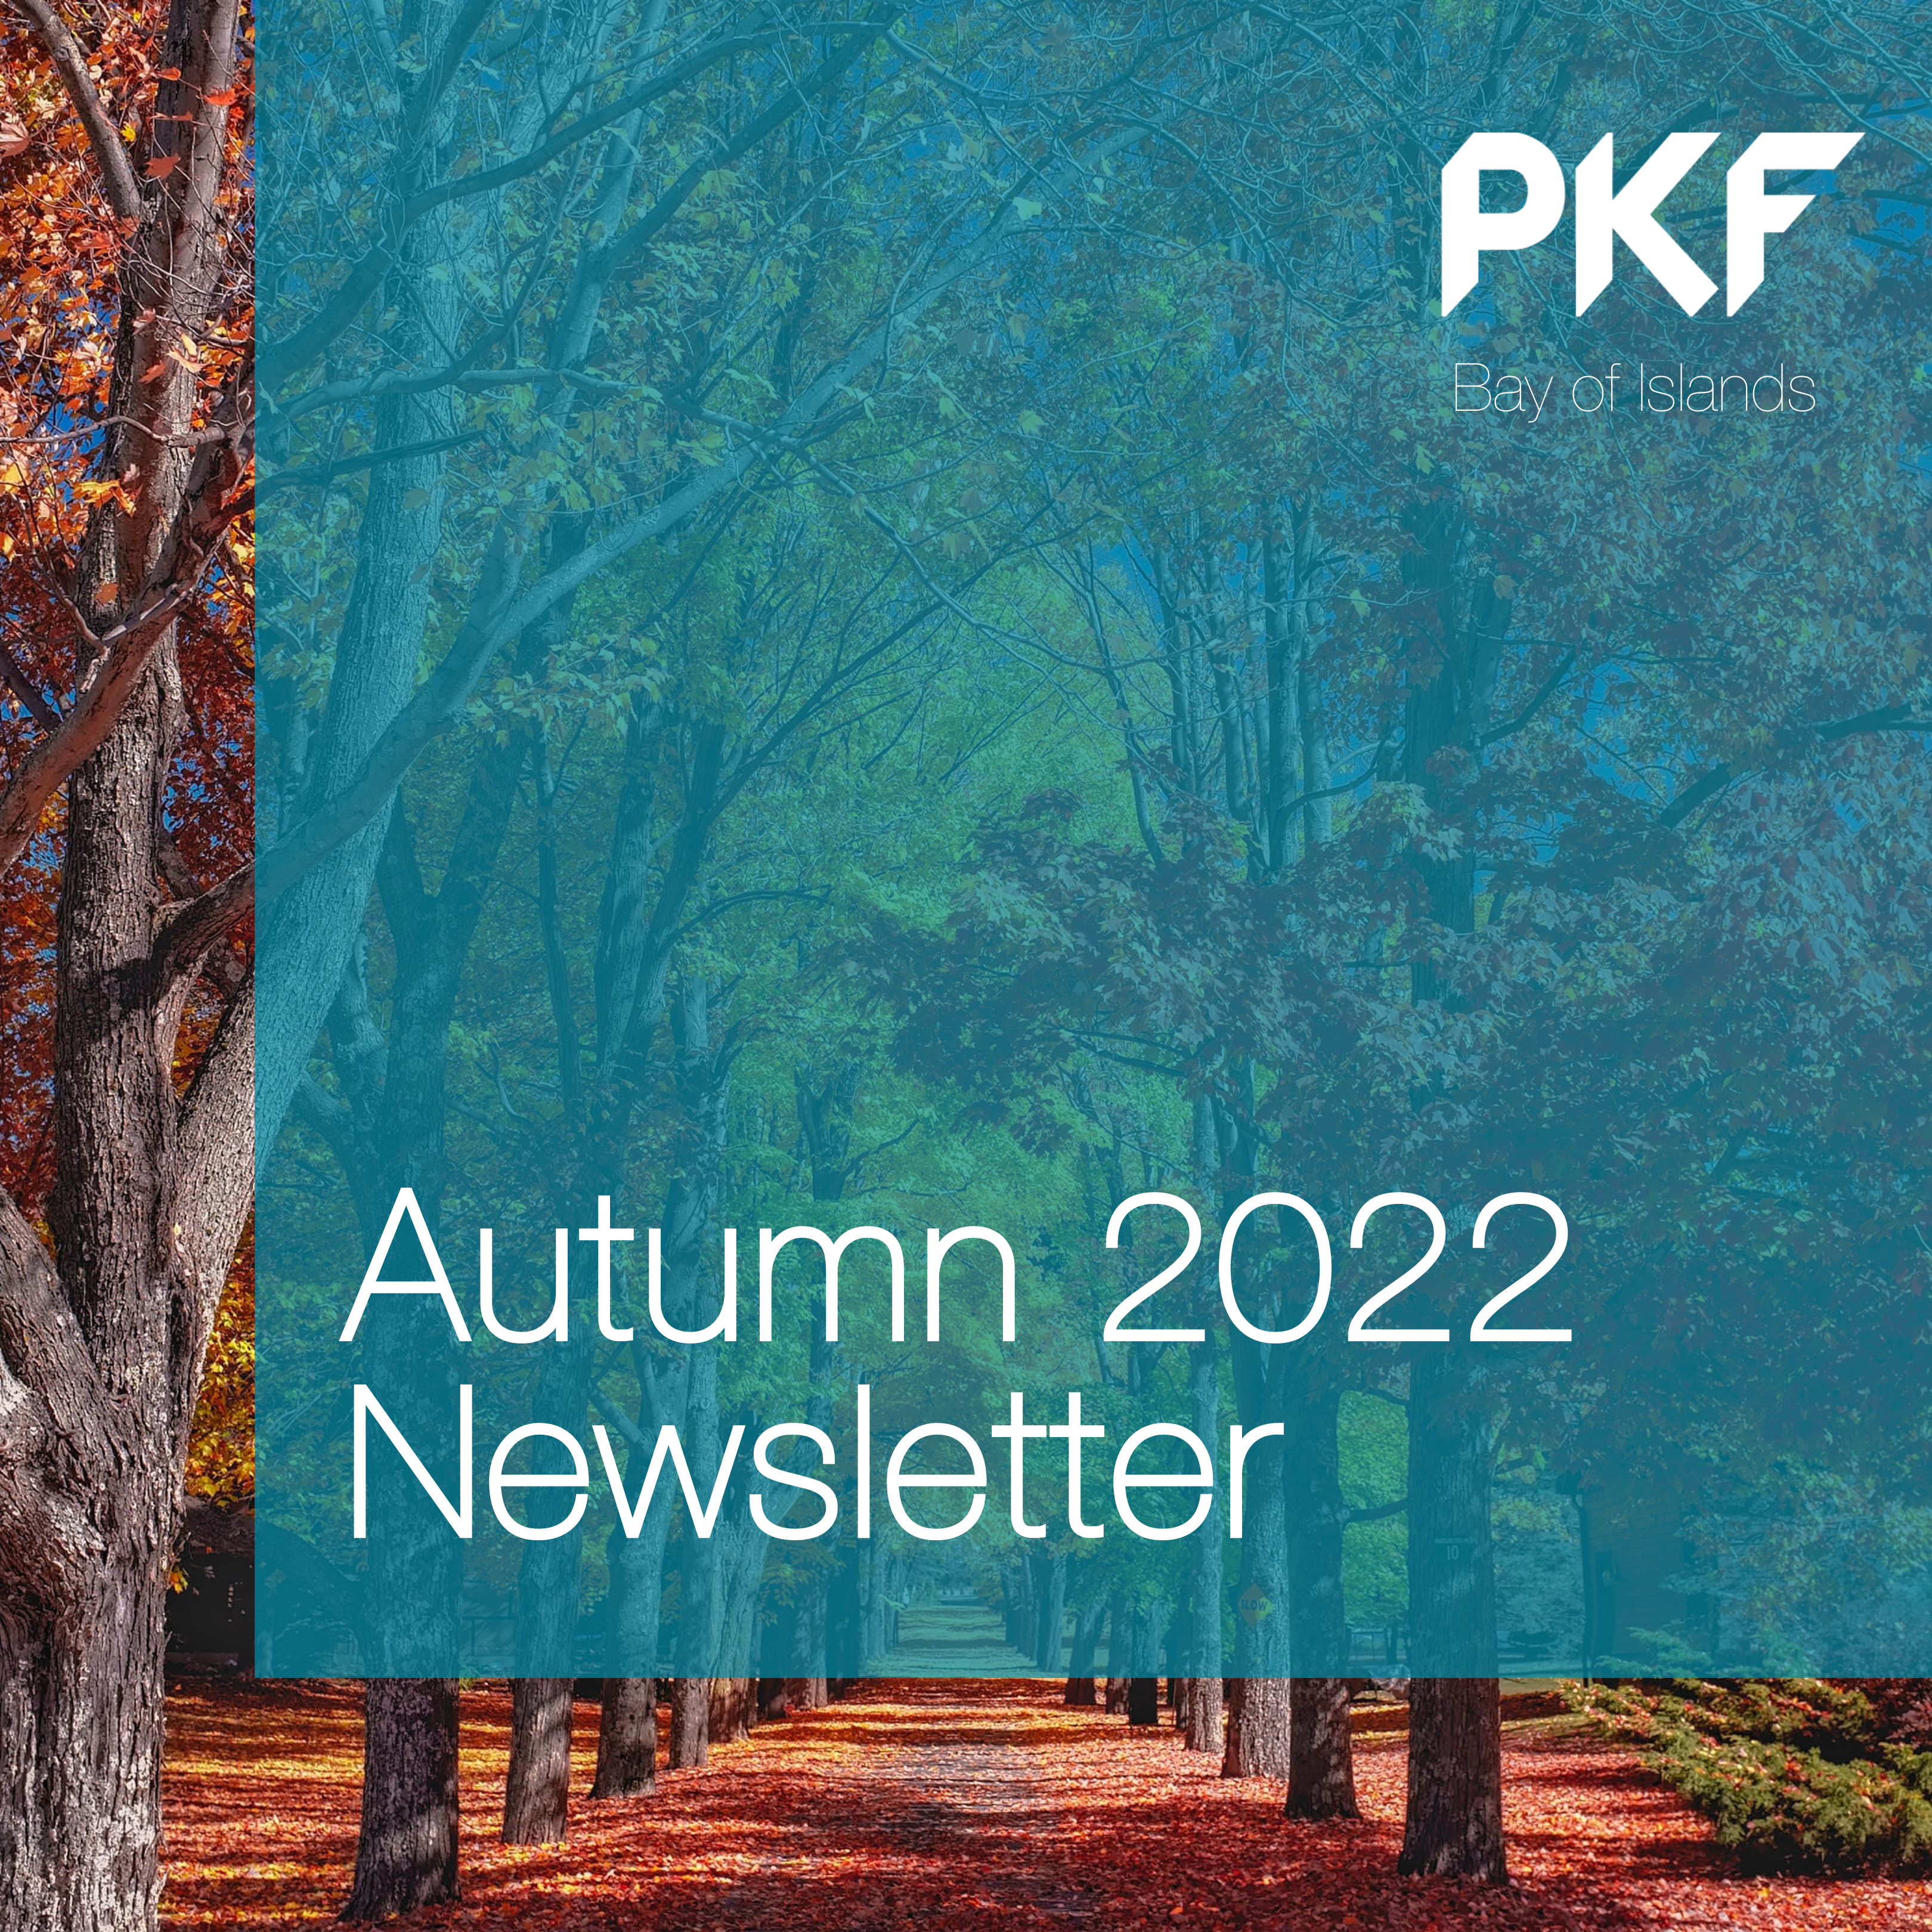 Autumn 2022 Newsletter